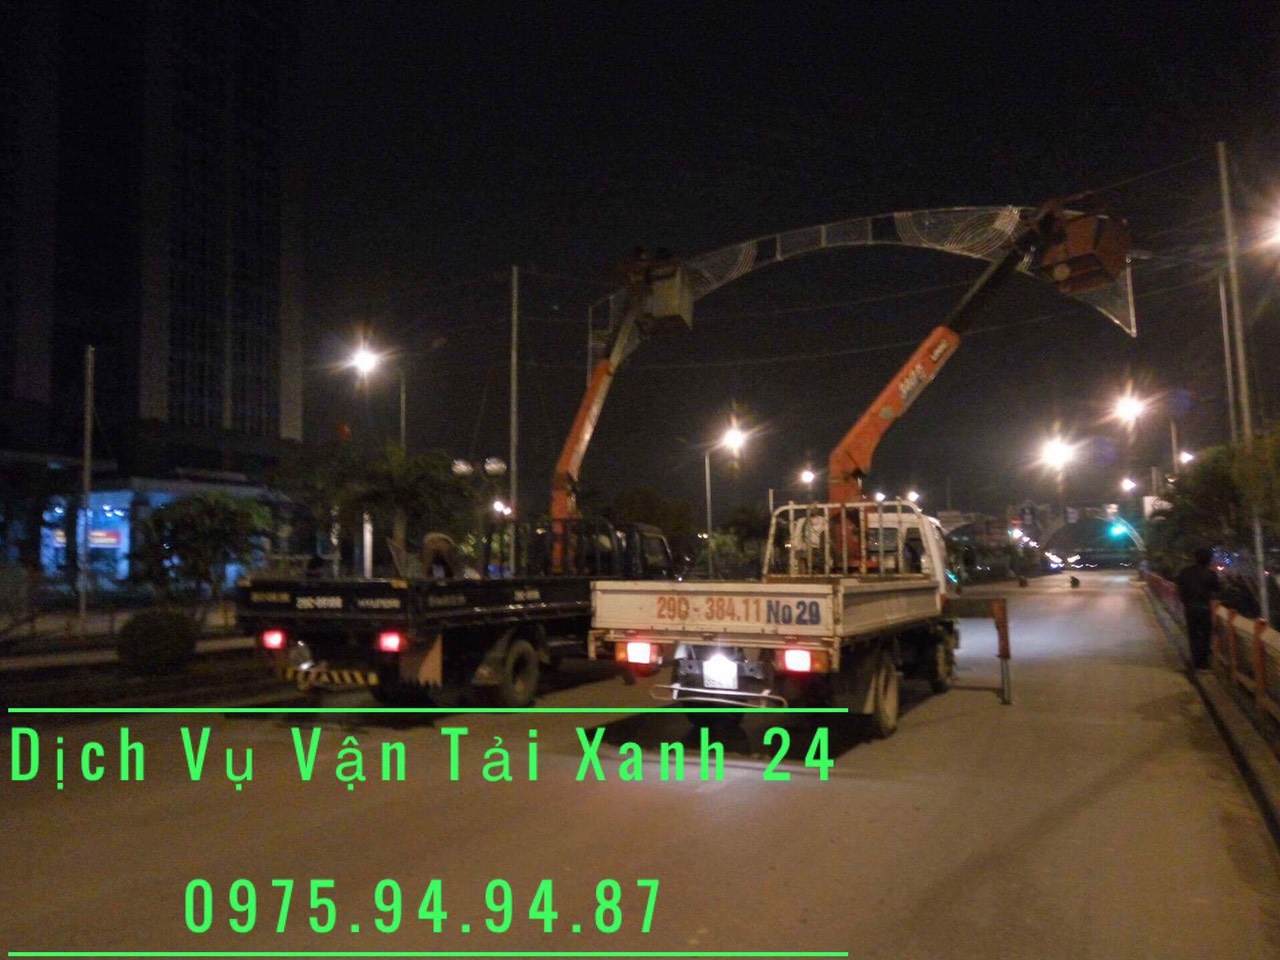 Dịch vụ cho thuê xe tải cẩu 15 tấn tại Hà Nội – Giá rẻ, uy tín